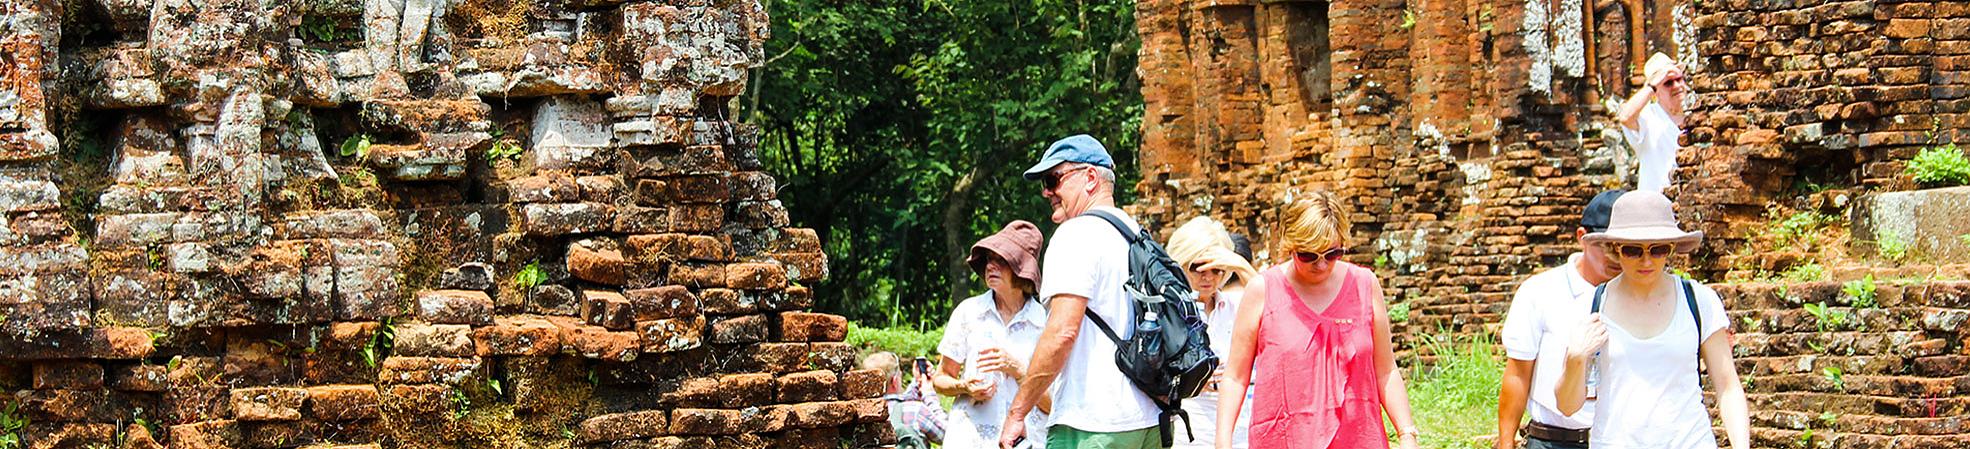 Top 8 UNESCO World Heritage Sites in Vietnam